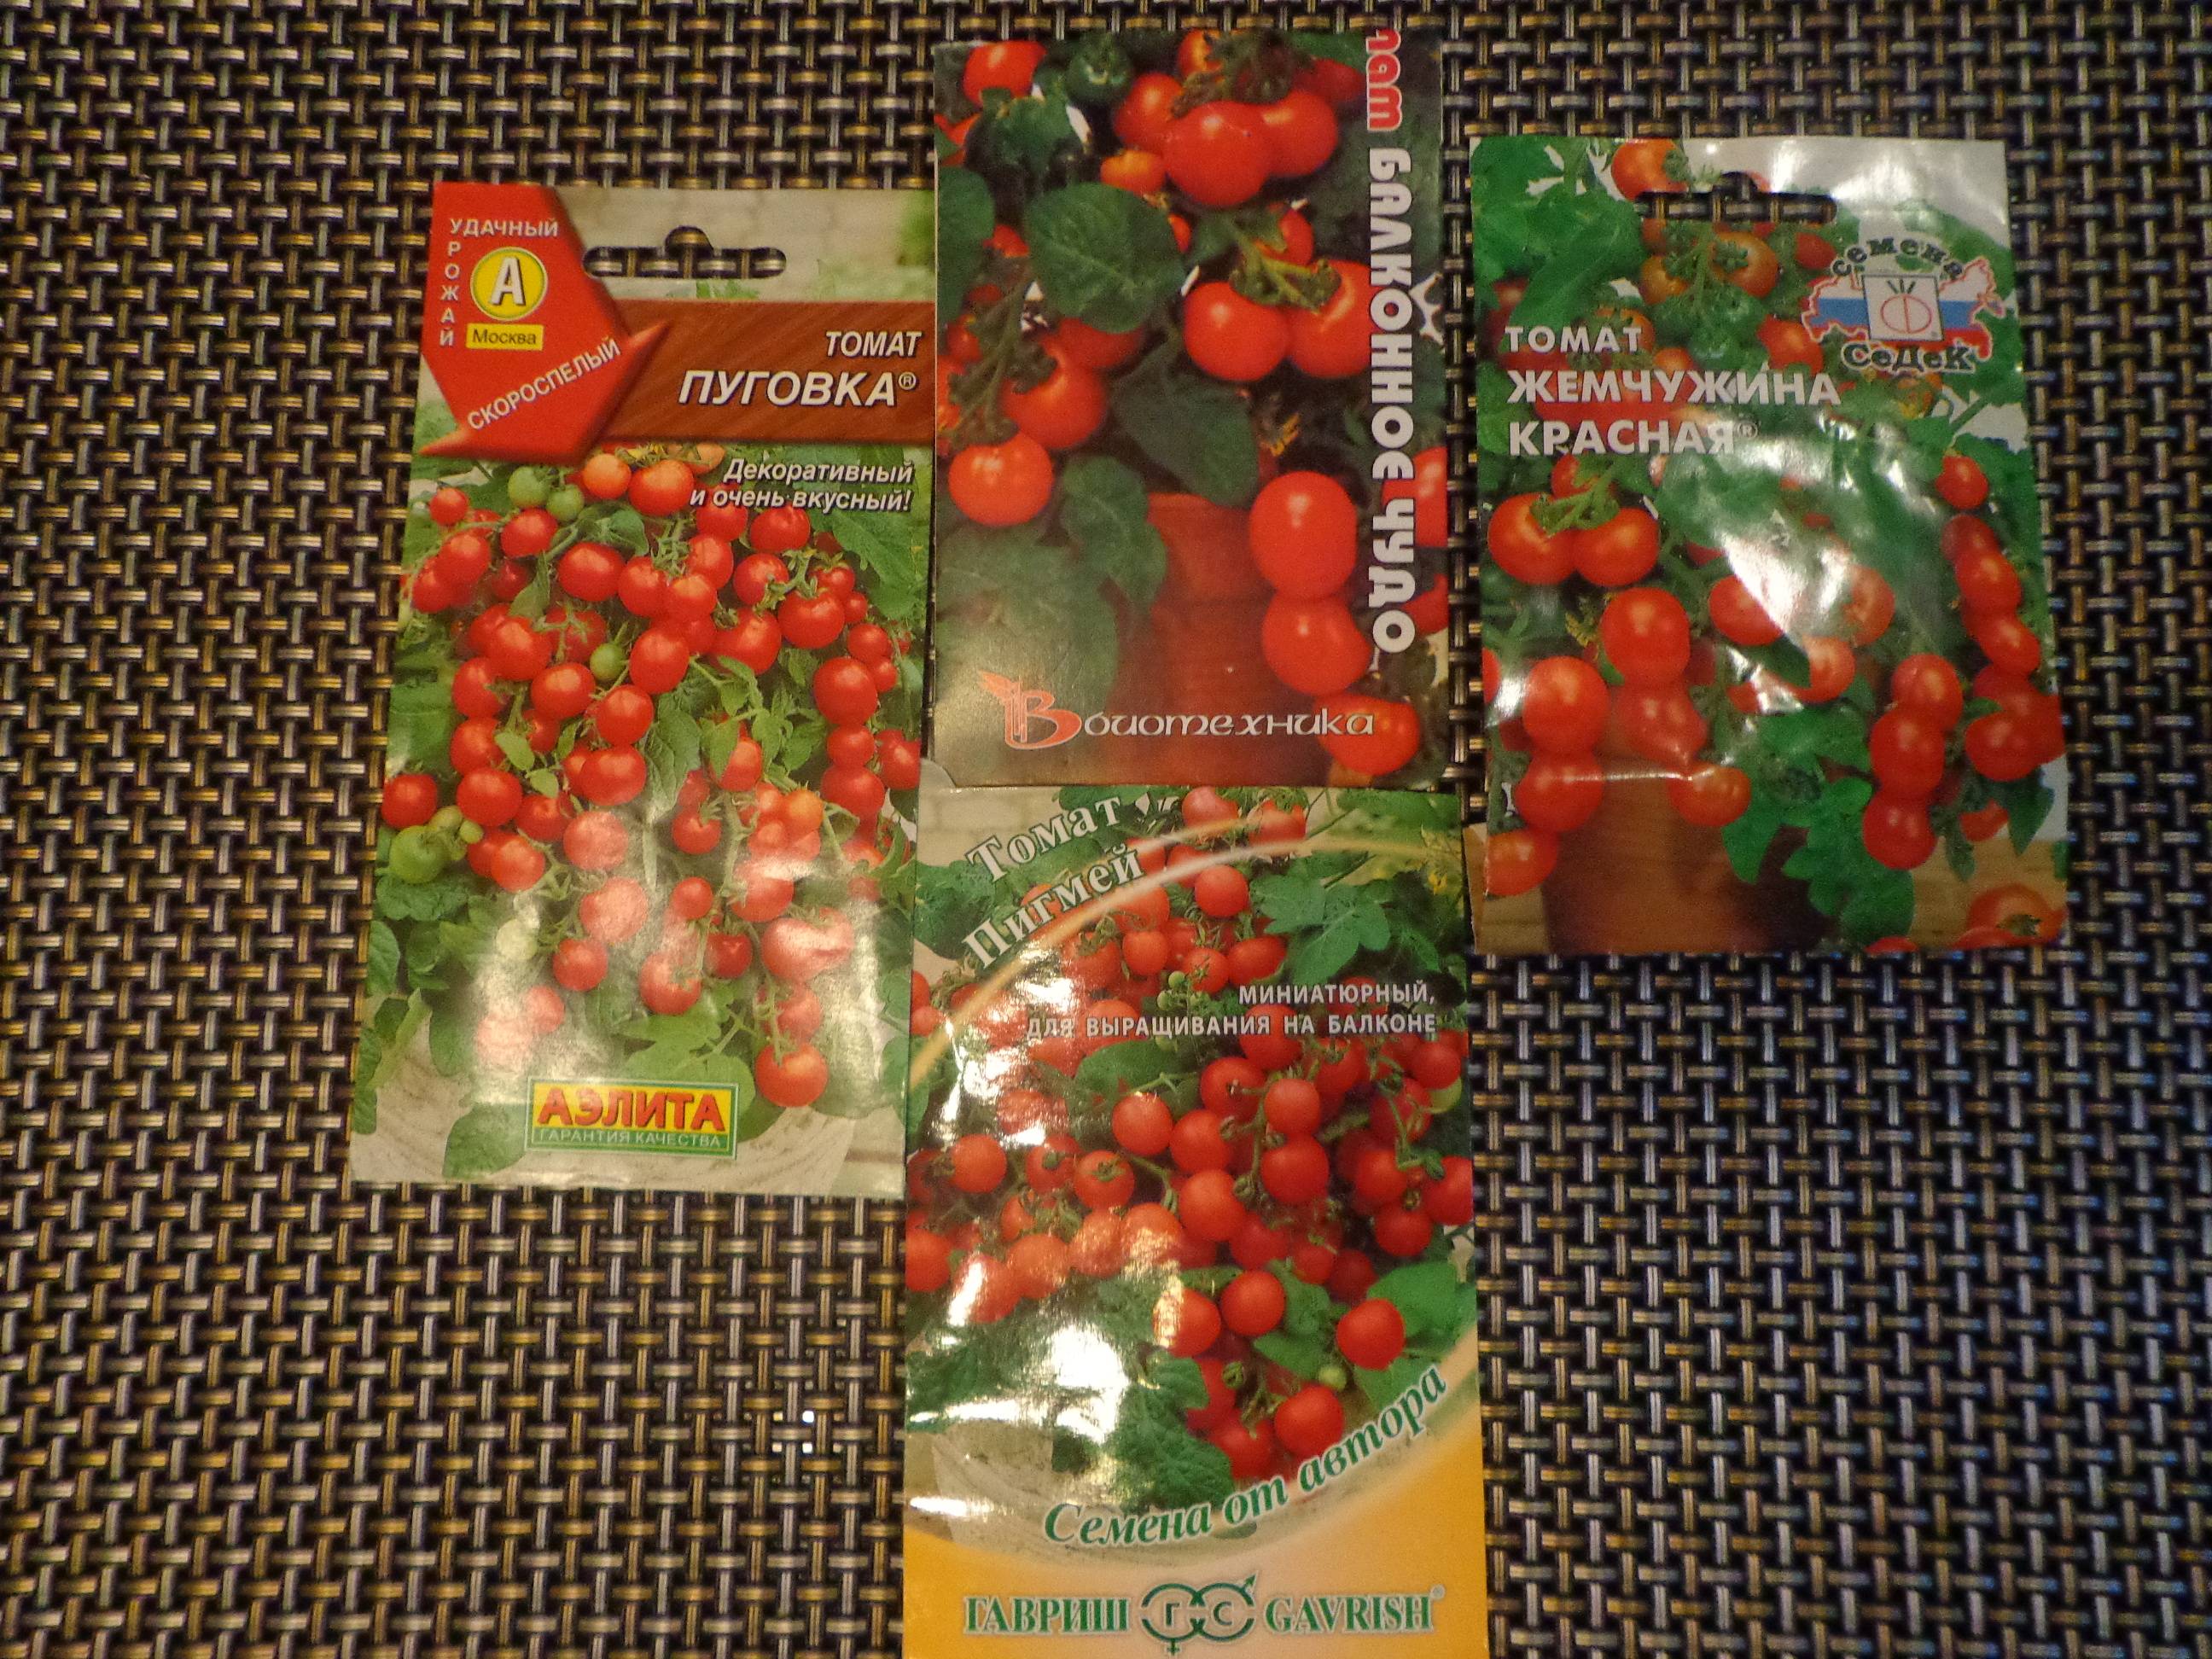 Семена аэлита-агро томат «пуговка» — отзывы